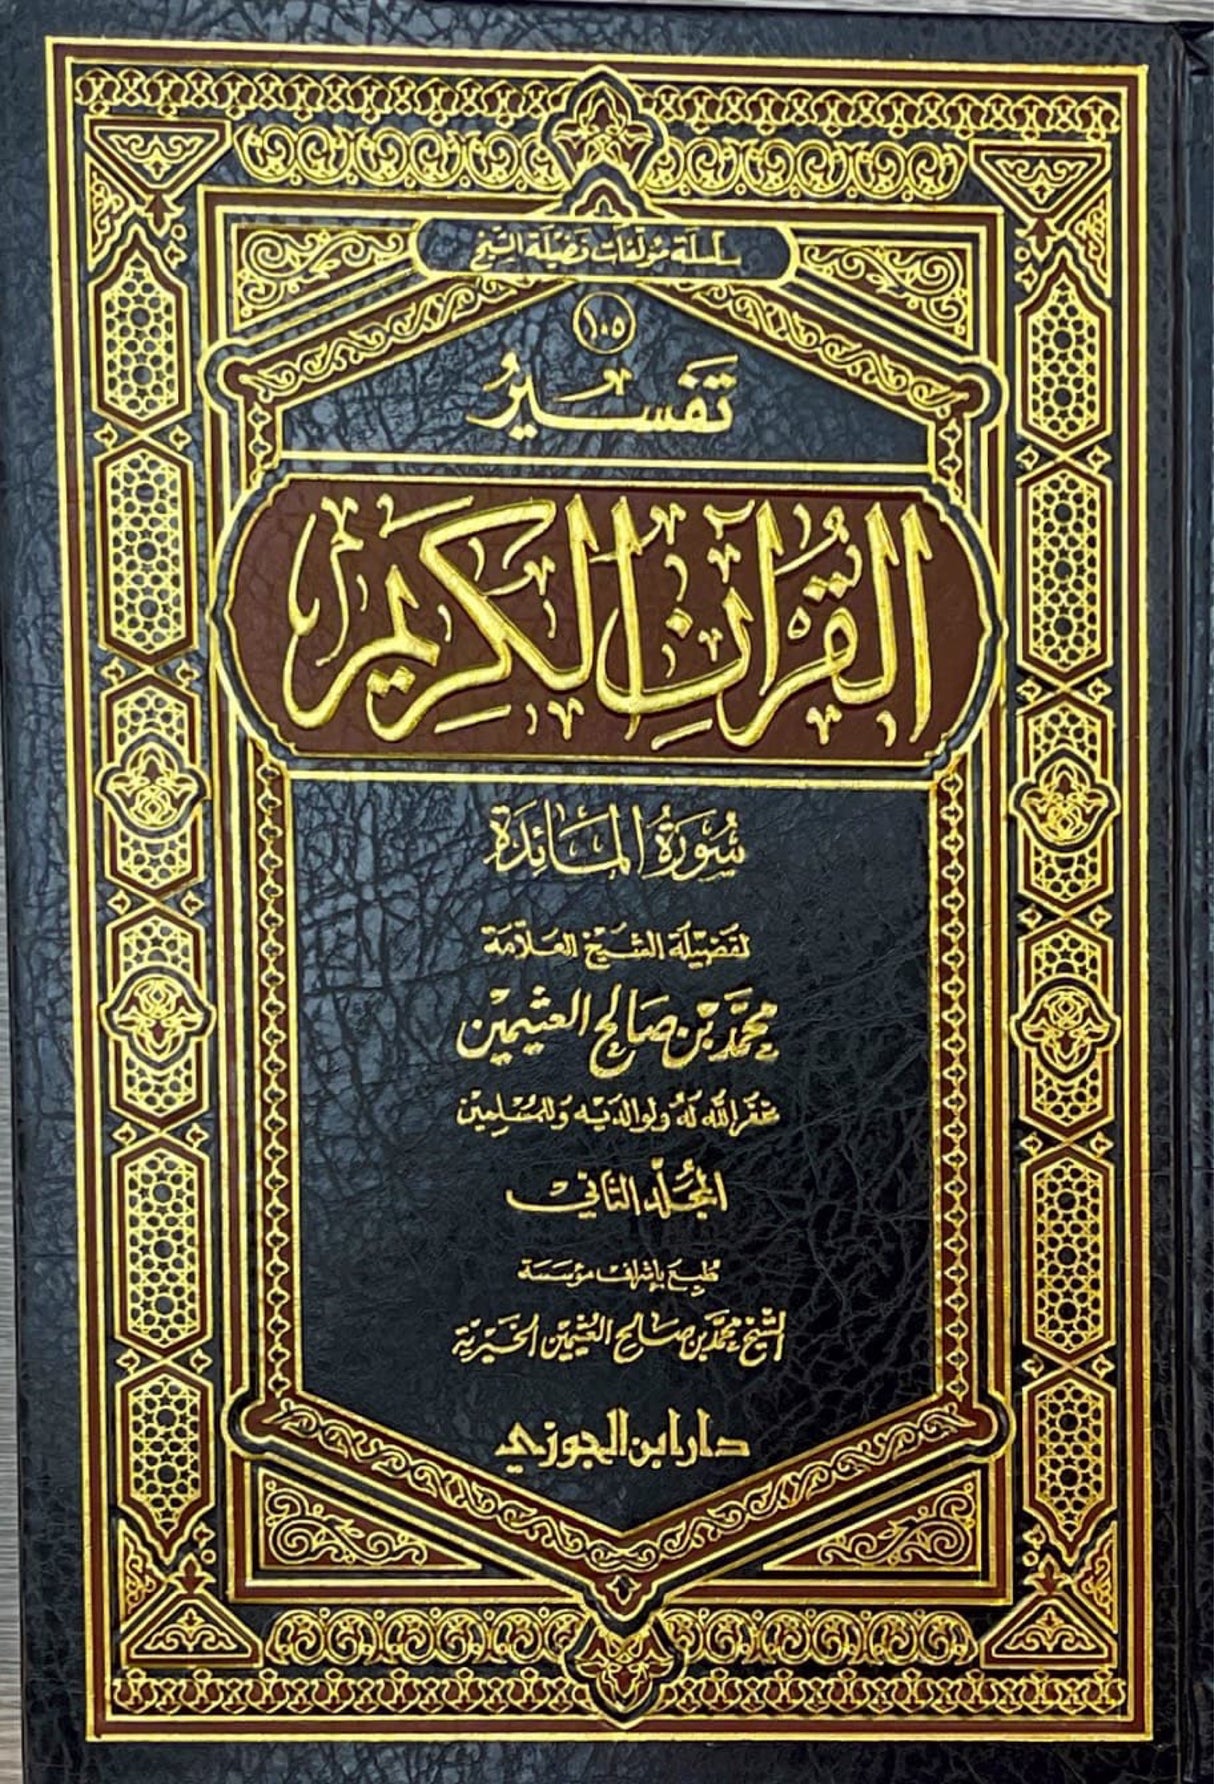 تفسير القران الكريم - سورة المائدة    Tafsir al Quran al Karim - Surah al Maaida (2 Volume Set)